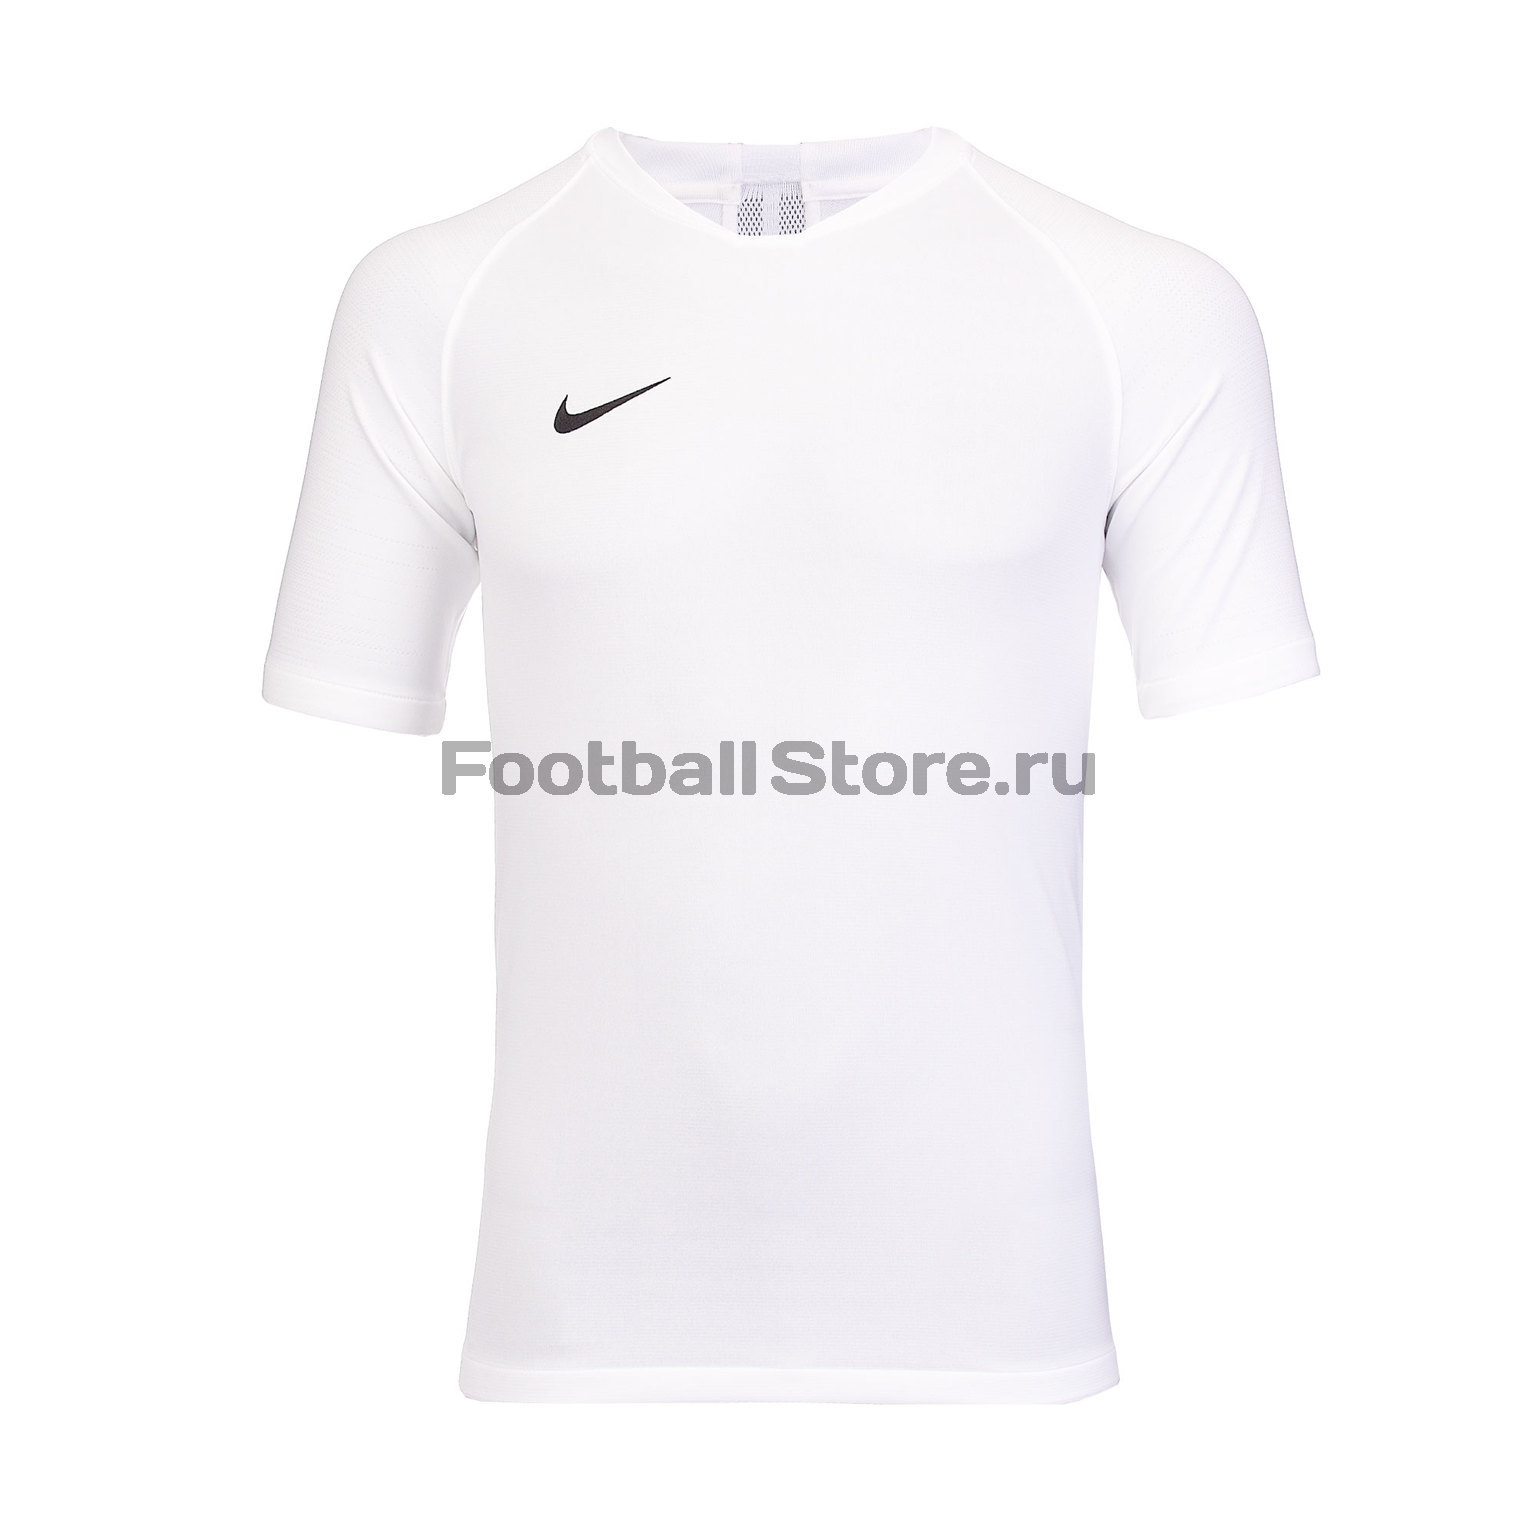 Футболка подростковая Nike Dry Strike SS AJ1027-101